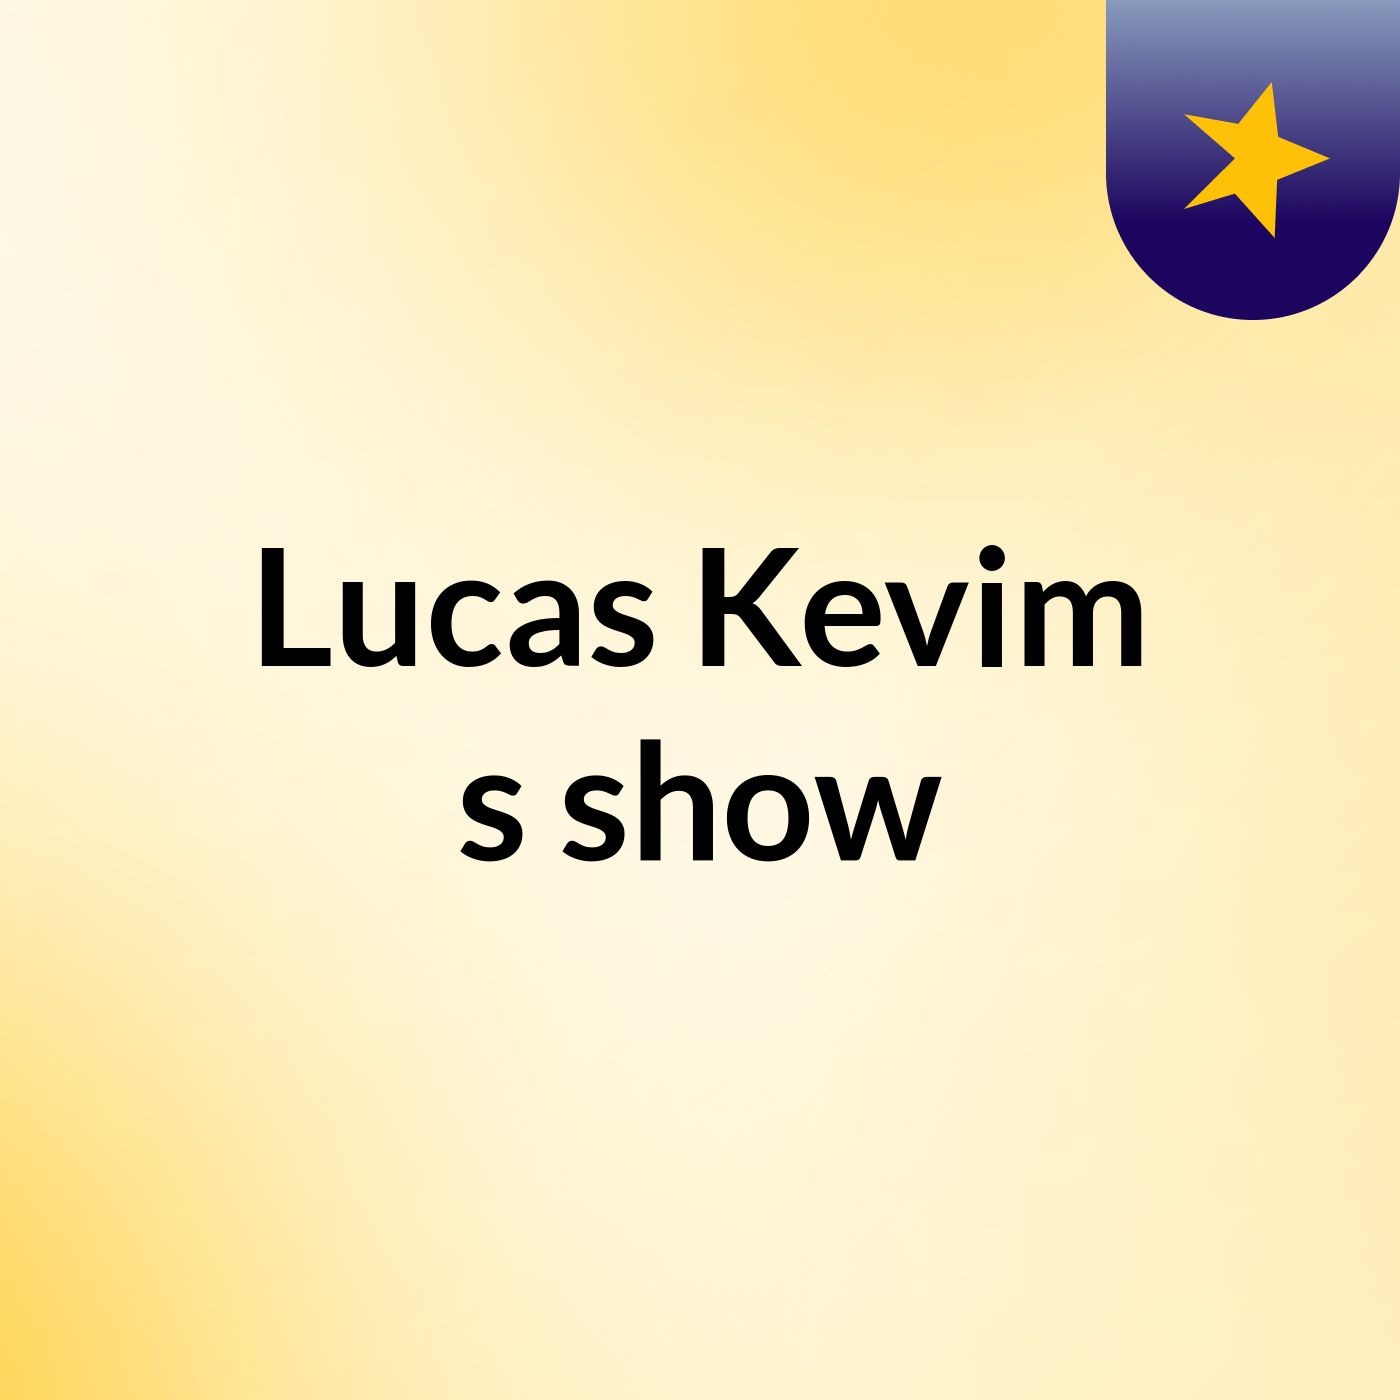 Lucas Kevim's show